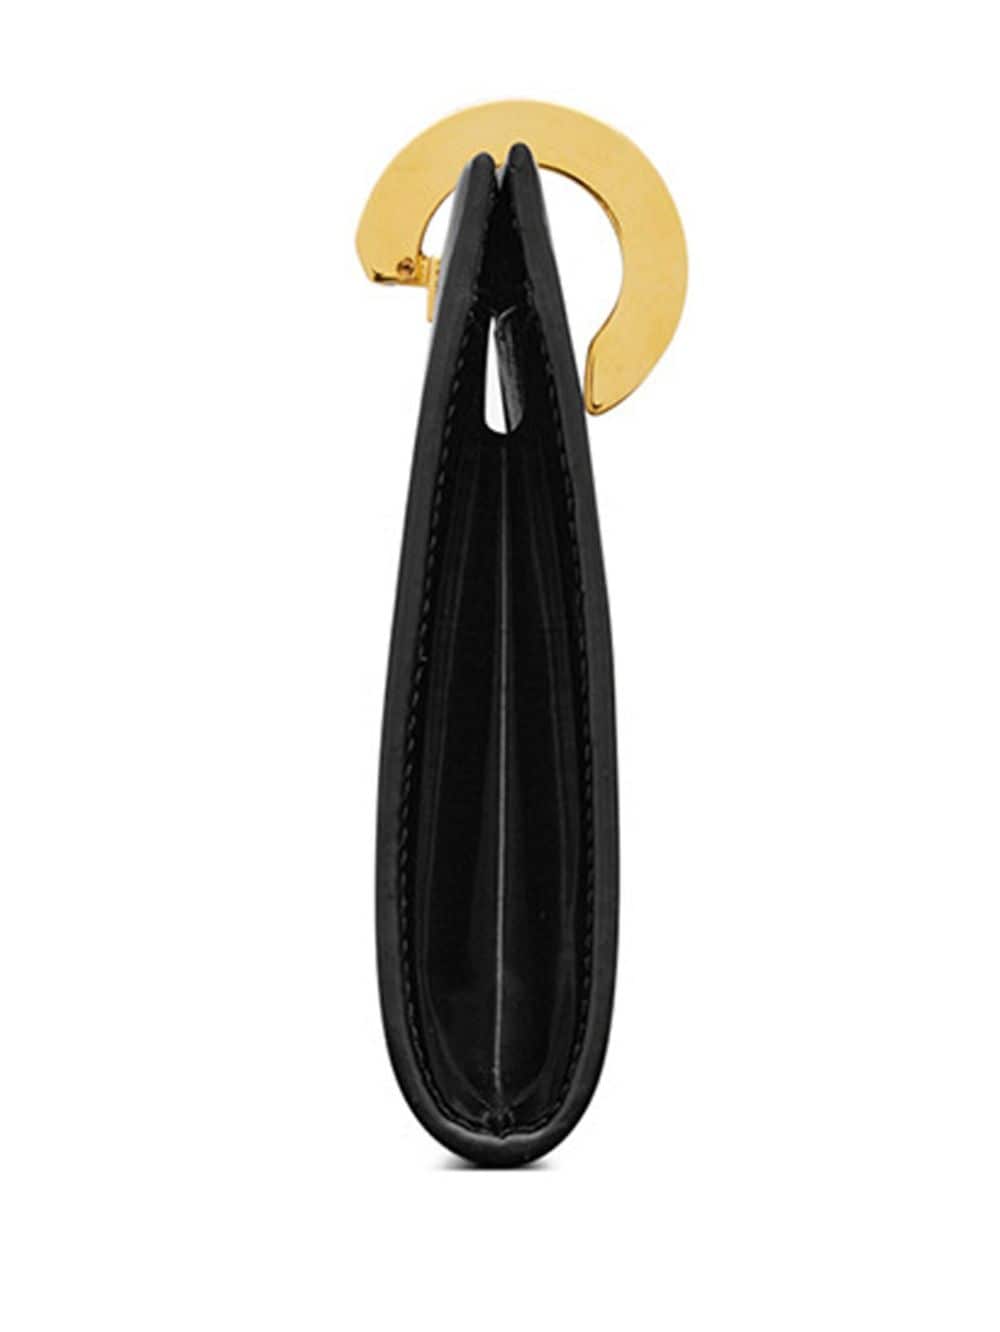 Balo da đen bóng với khóa móc kim loại cho phái nữ